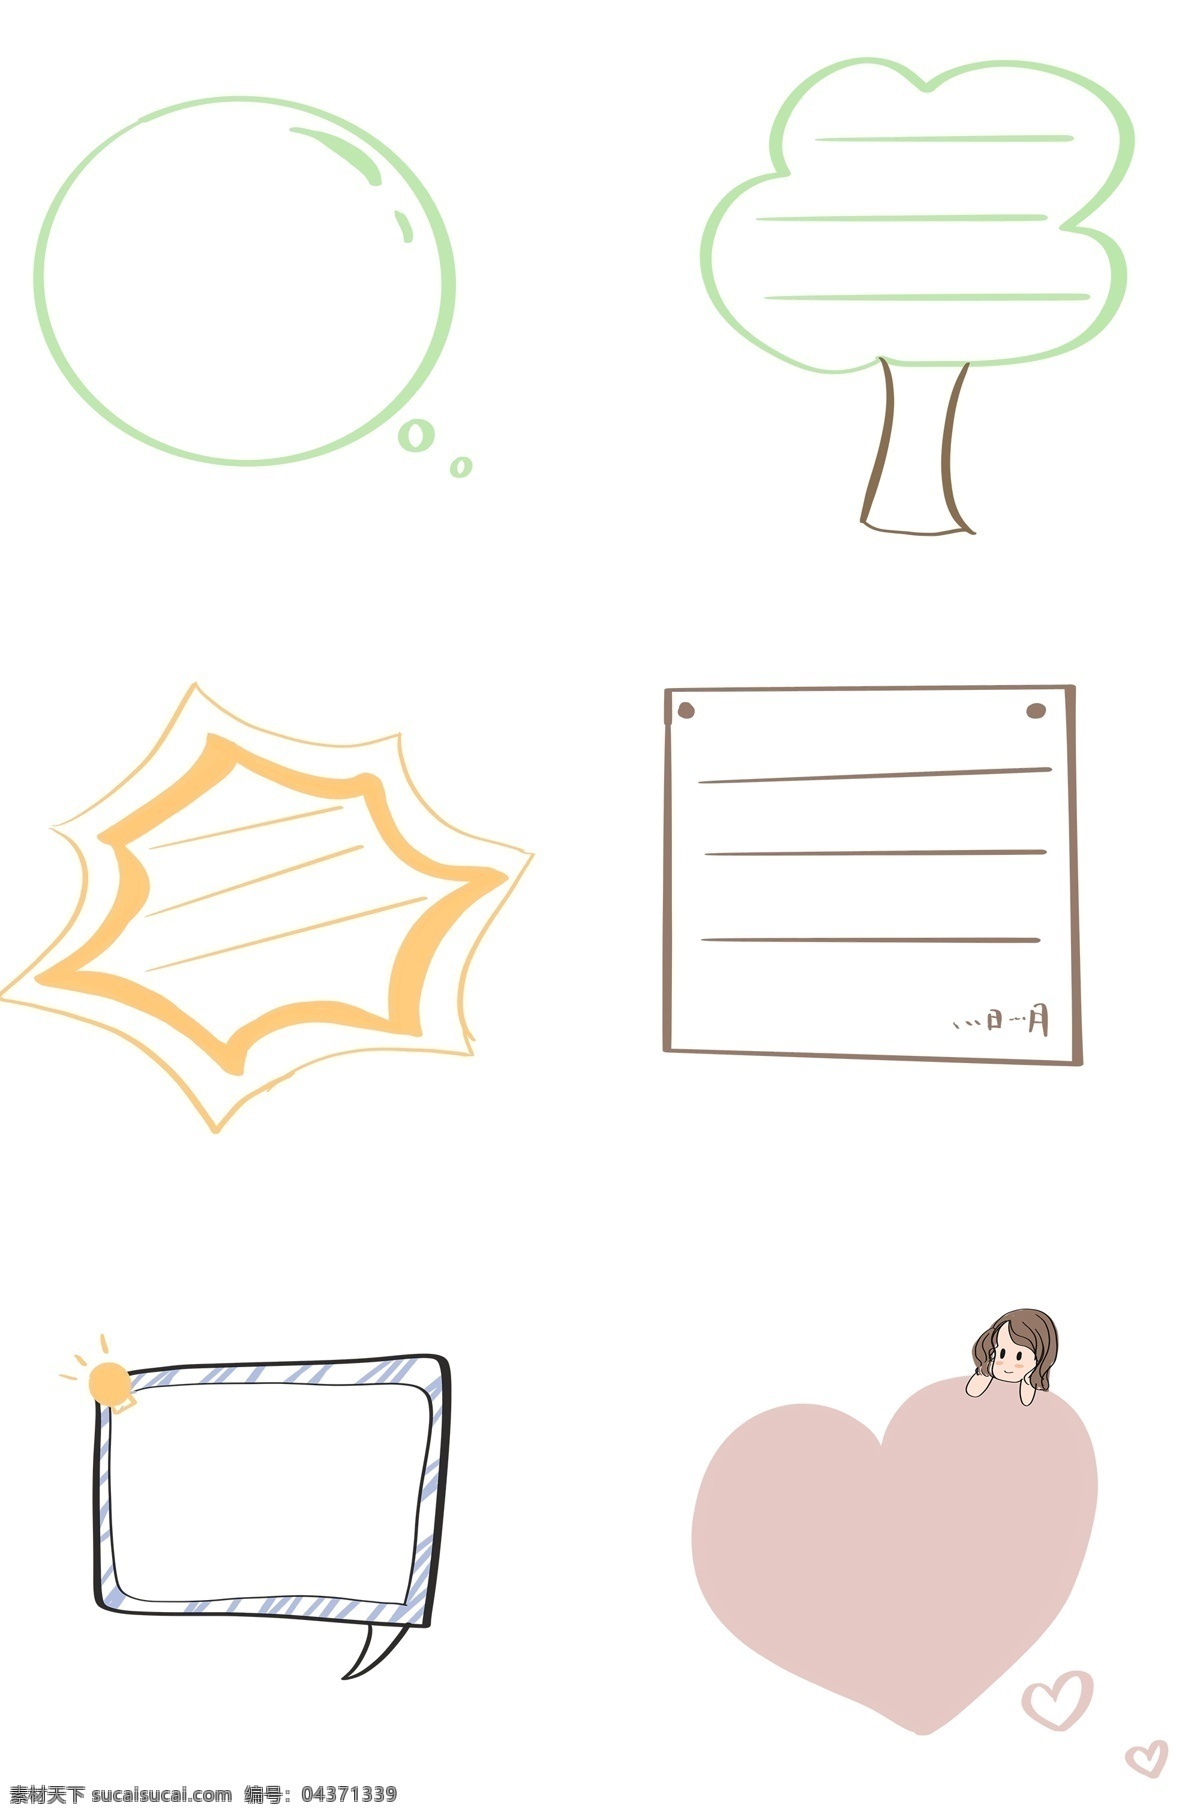 手绘 对话框 绿色 卡通 圆形 简单 可爱 对话款 简约 框 小树 爱心 简单对话框 不规则手绘 圆形对话框 卡通手绘